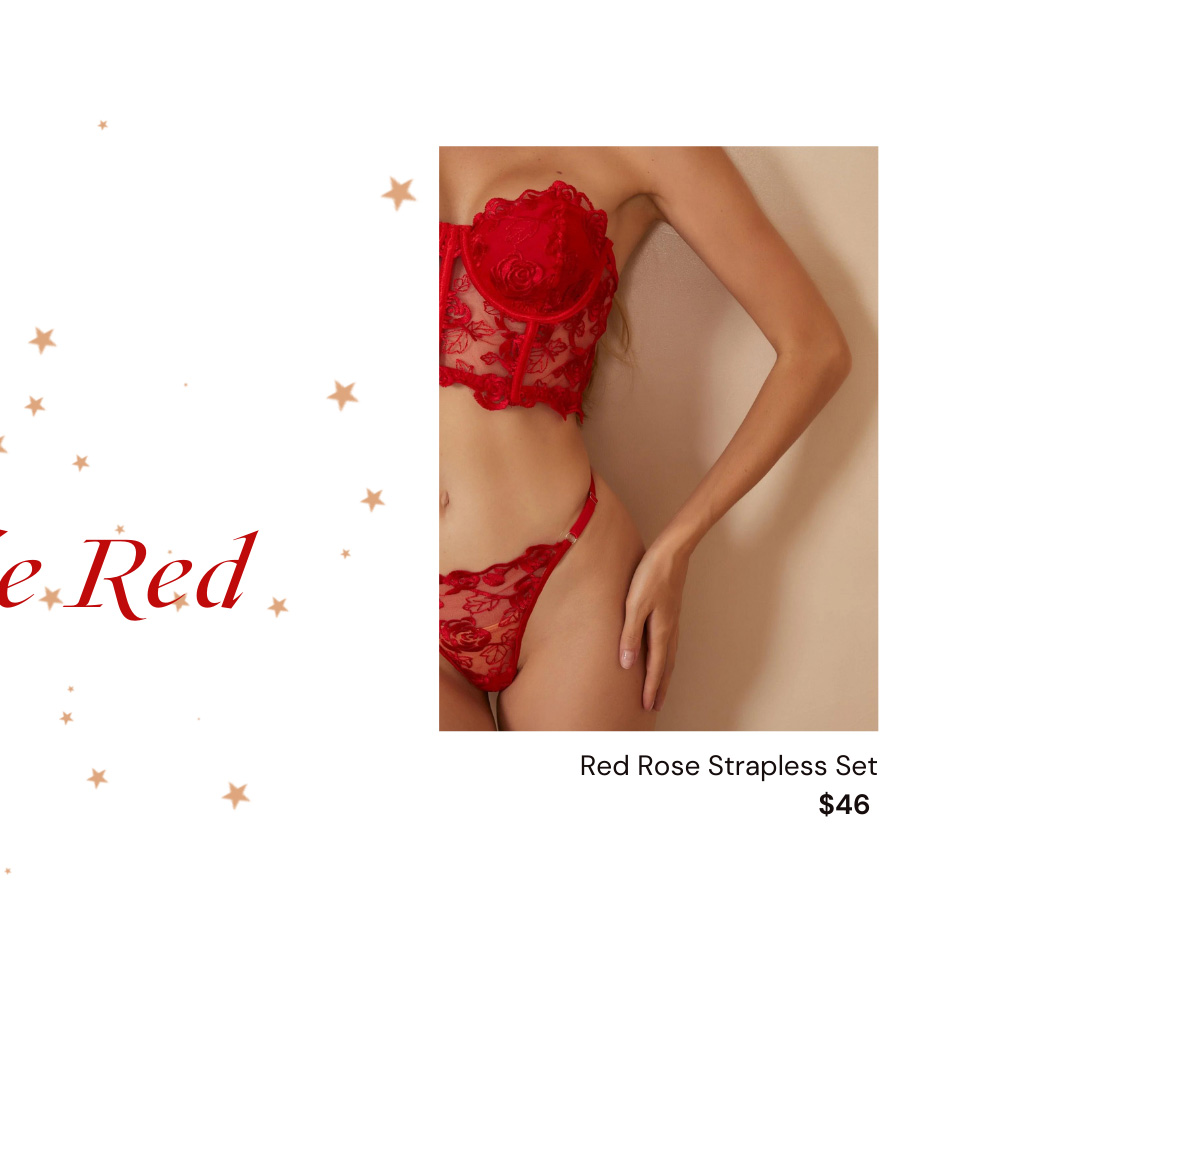 red rose strapless lingerie